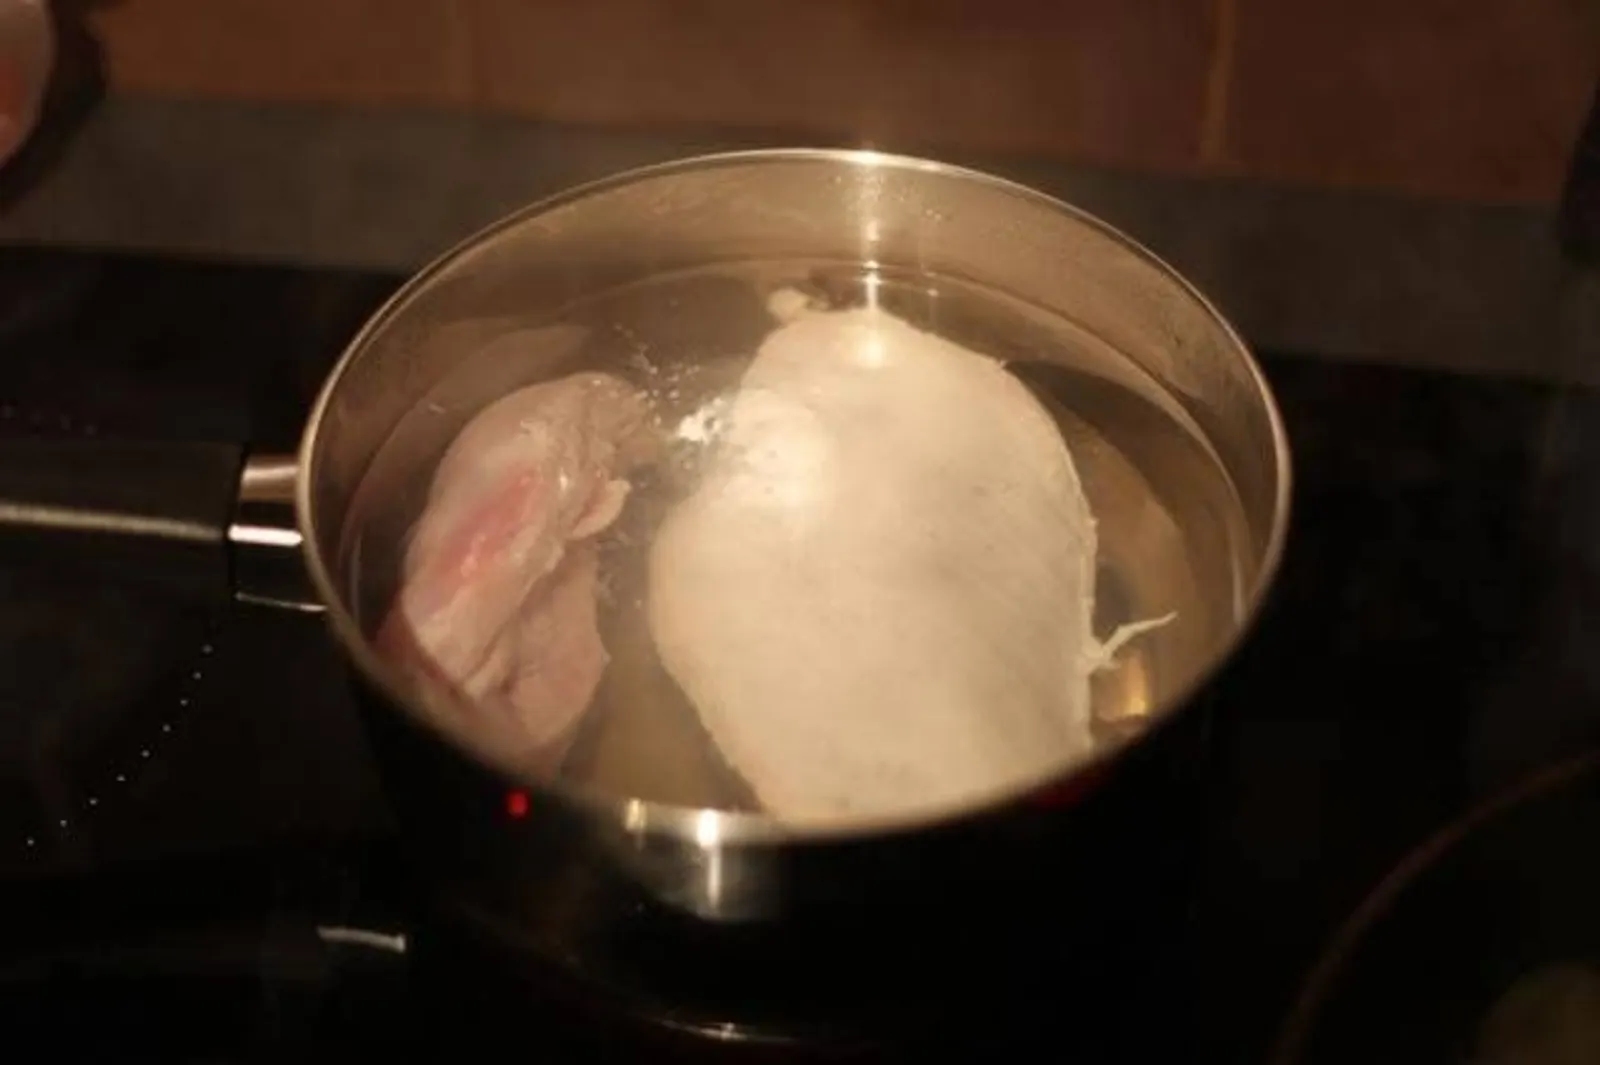 Resep Ayam Suwir Kecap yang Praktis dan Mudah Dibuat